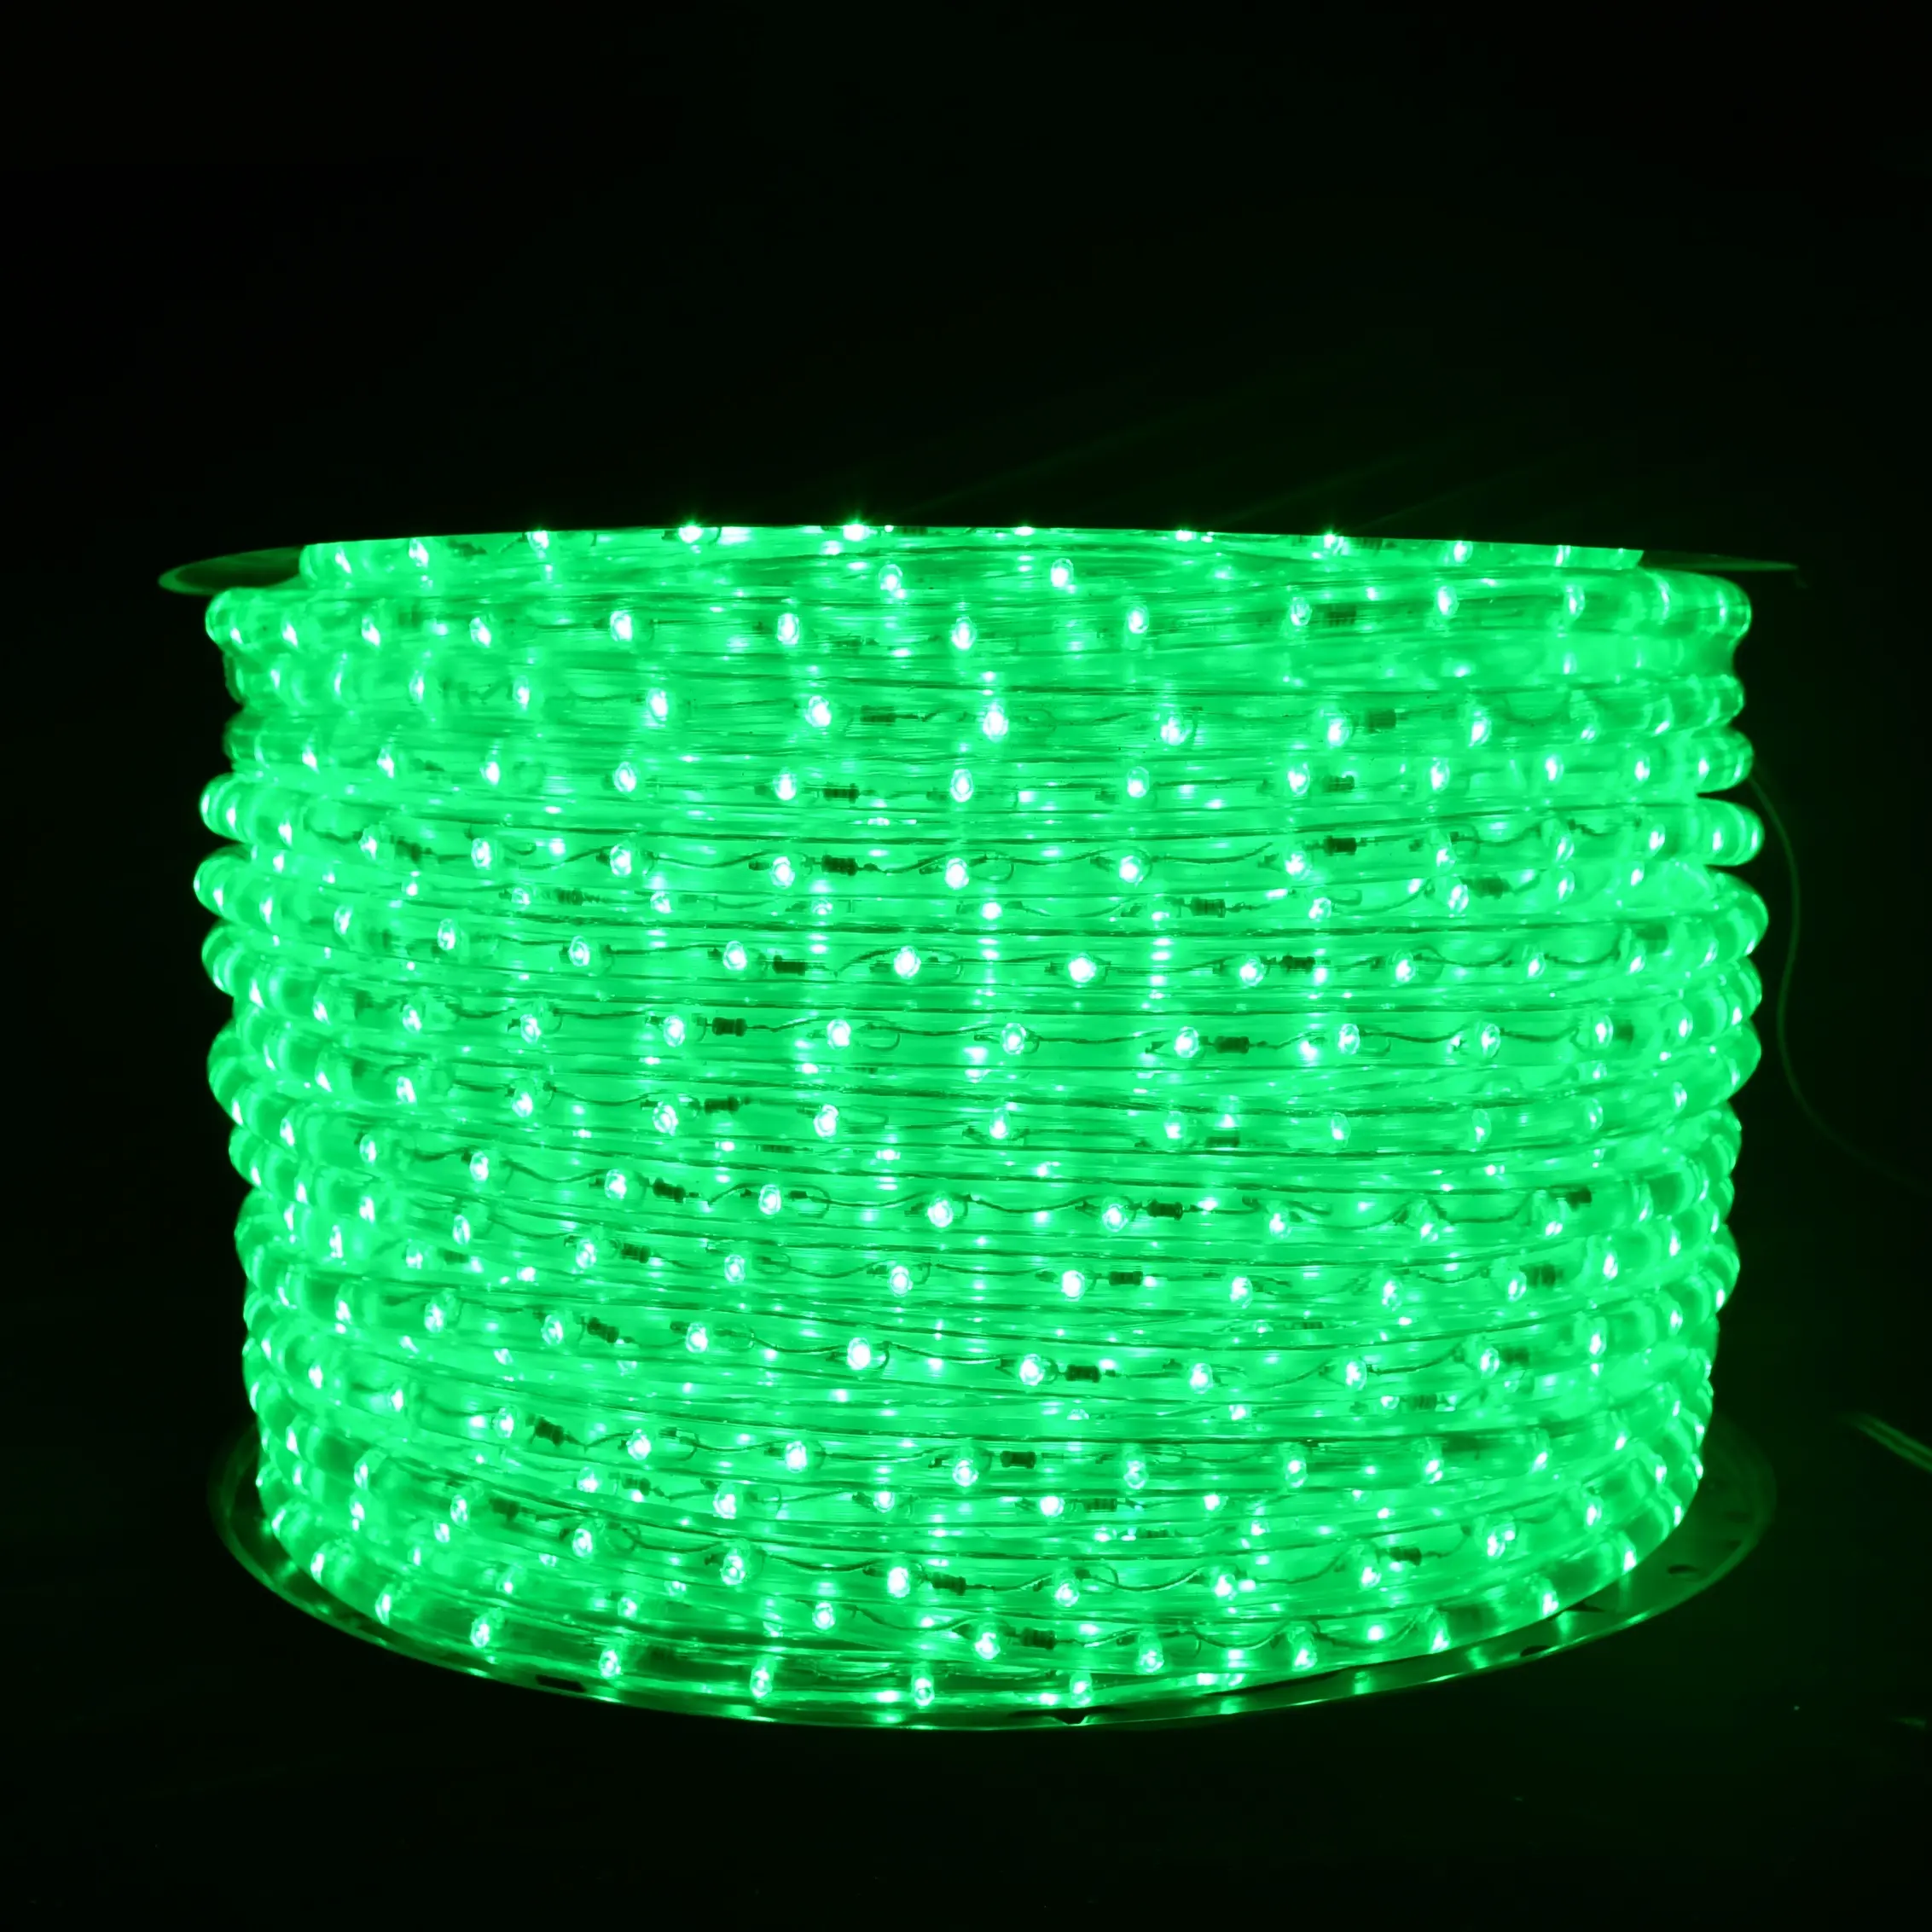 LED Lumières Bande Feuille De Chêne SMD5050 Imperméable 16.4ft RVB LED L'éclairage De Bande avec 44 Touches Télécommande IR Pour Les Jardins /maisons